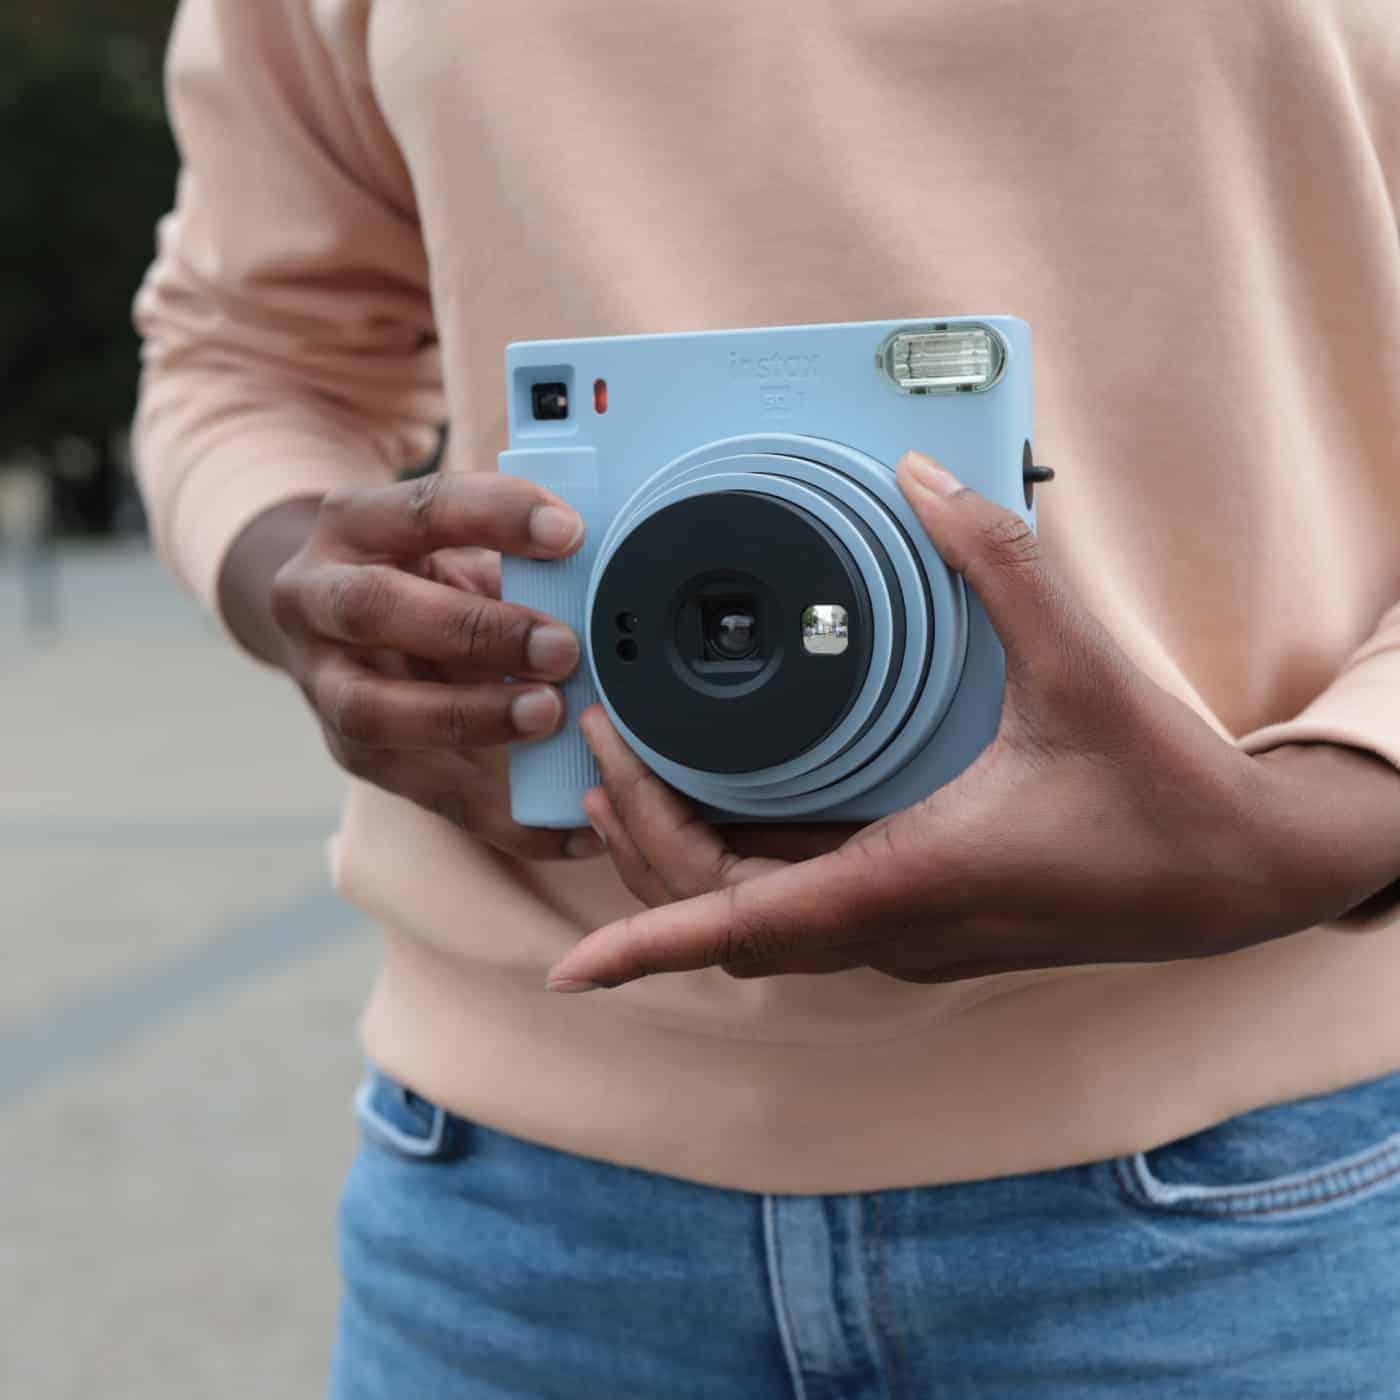 Fujifilm – Instax Square Sq1 Hybride, Caméra Photo Instantanée